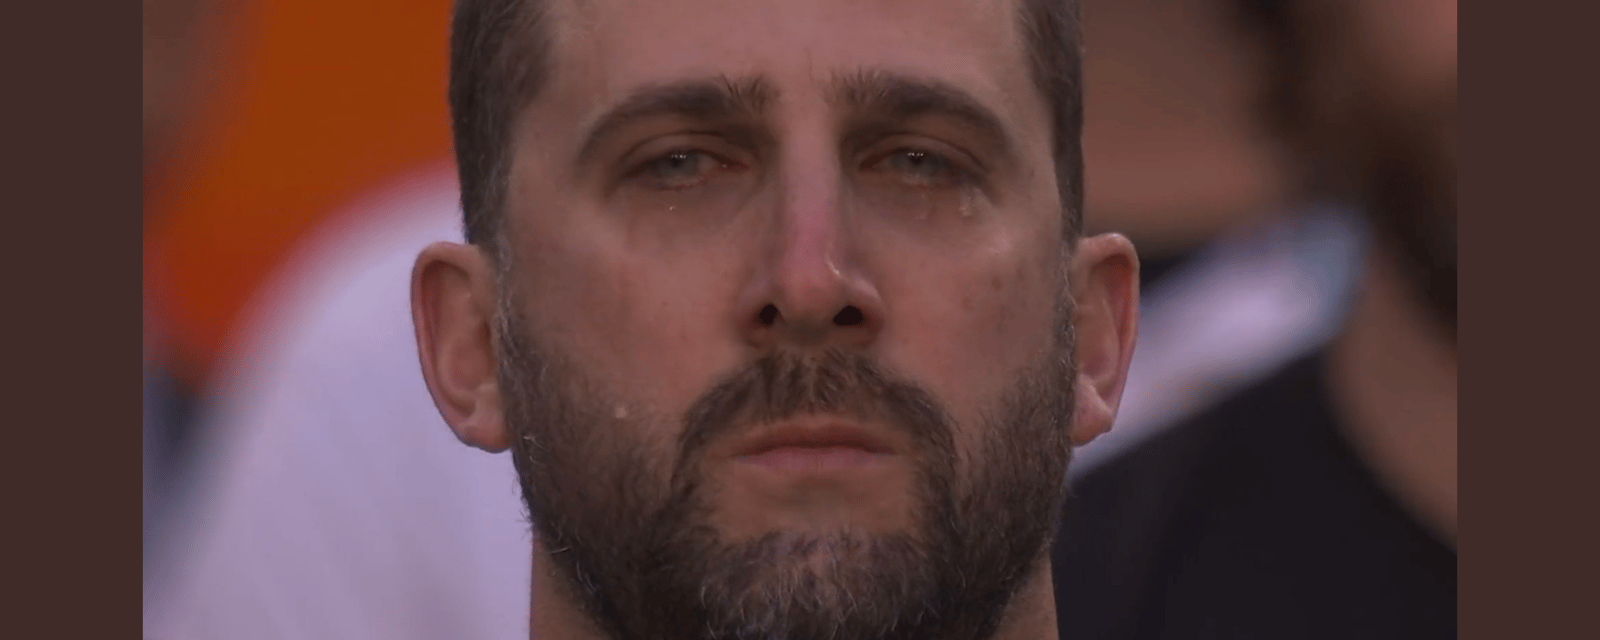 Emotional national anthem at Super Bowl 